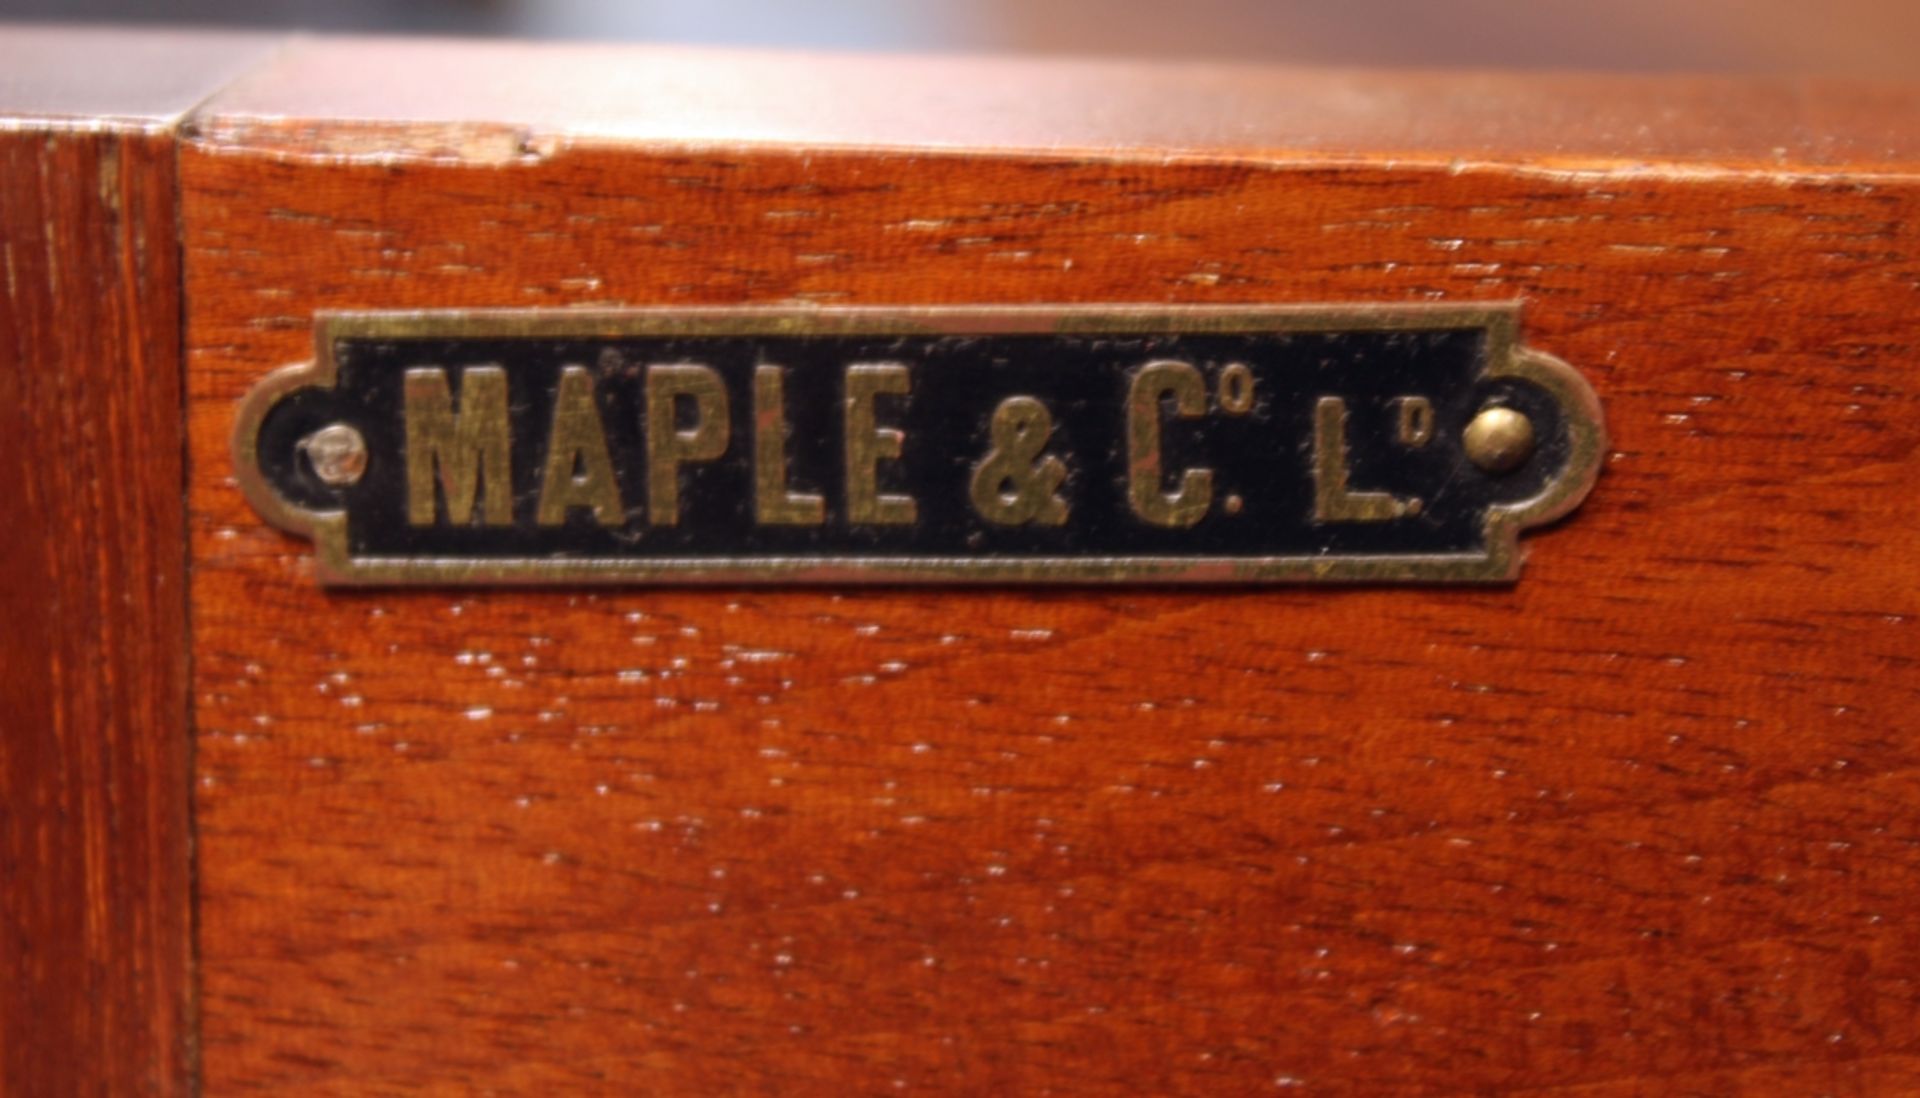 Bookcase, England, Anfang 20. Jh., Maple & Co, Mahagoni mit Band- und Fadeneinlagen, vorkragendes M - Bild 2 aus 2